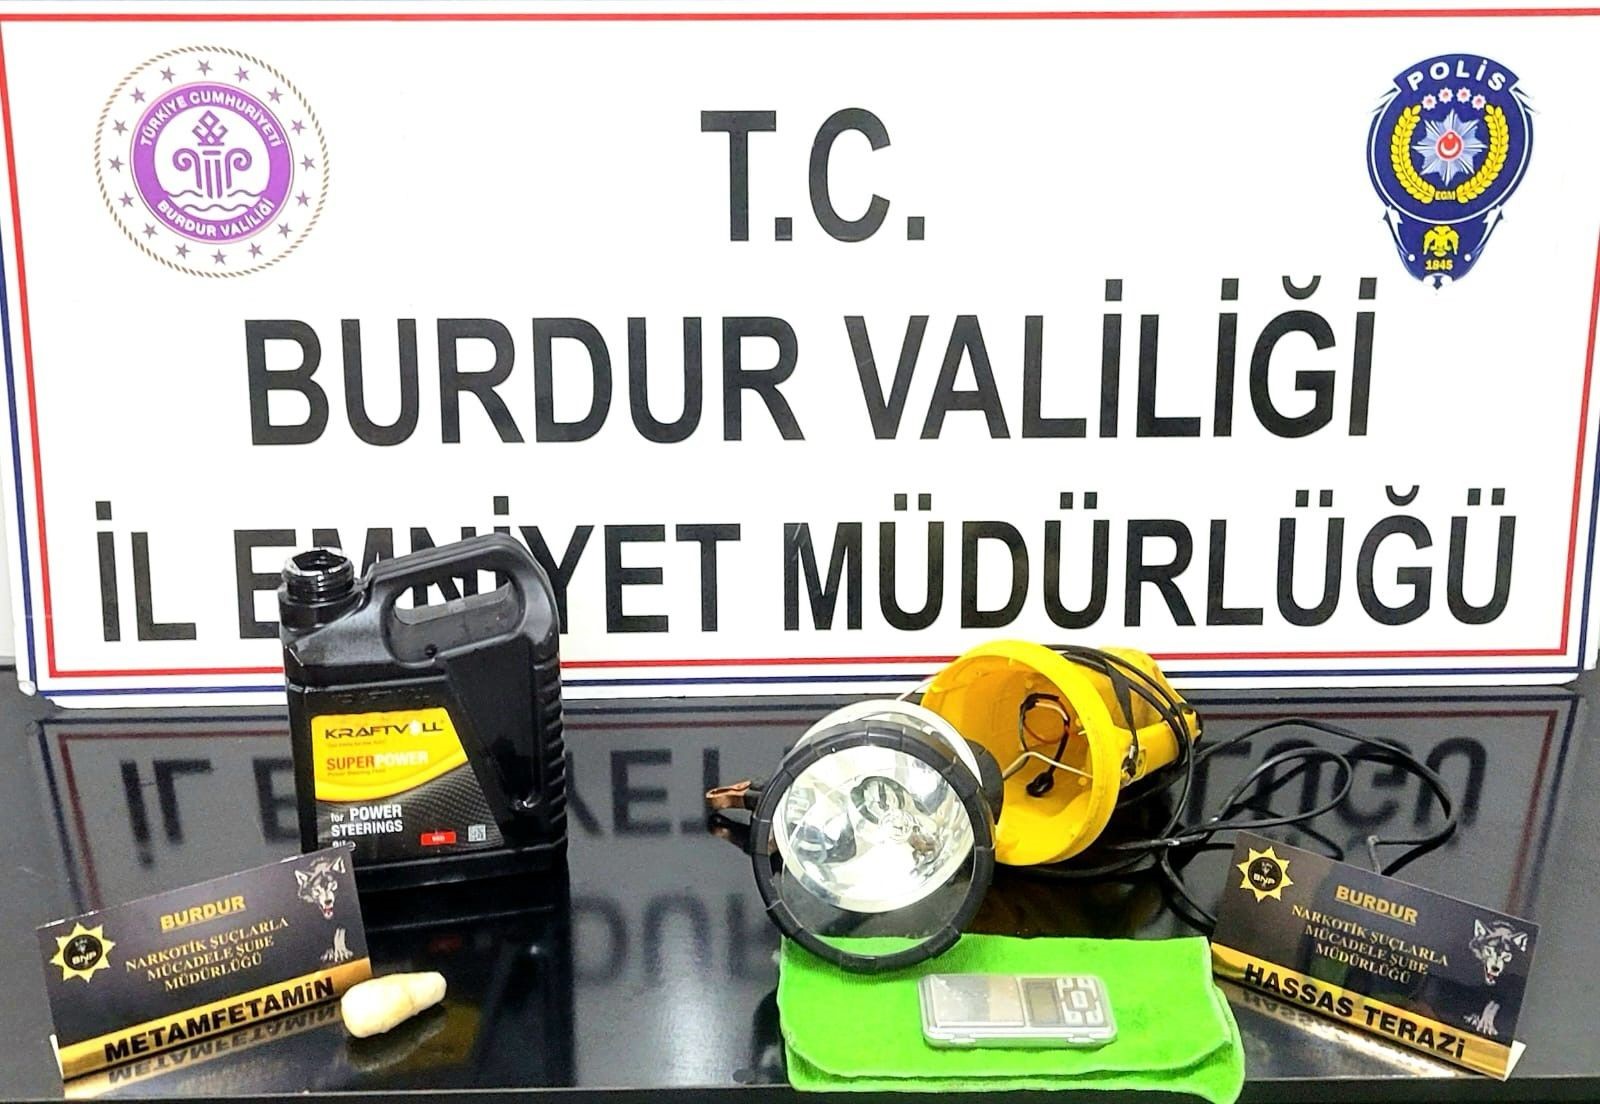 Burdur'da durdurulan araçta uyuşturucu çıktı '2 tutuklu'